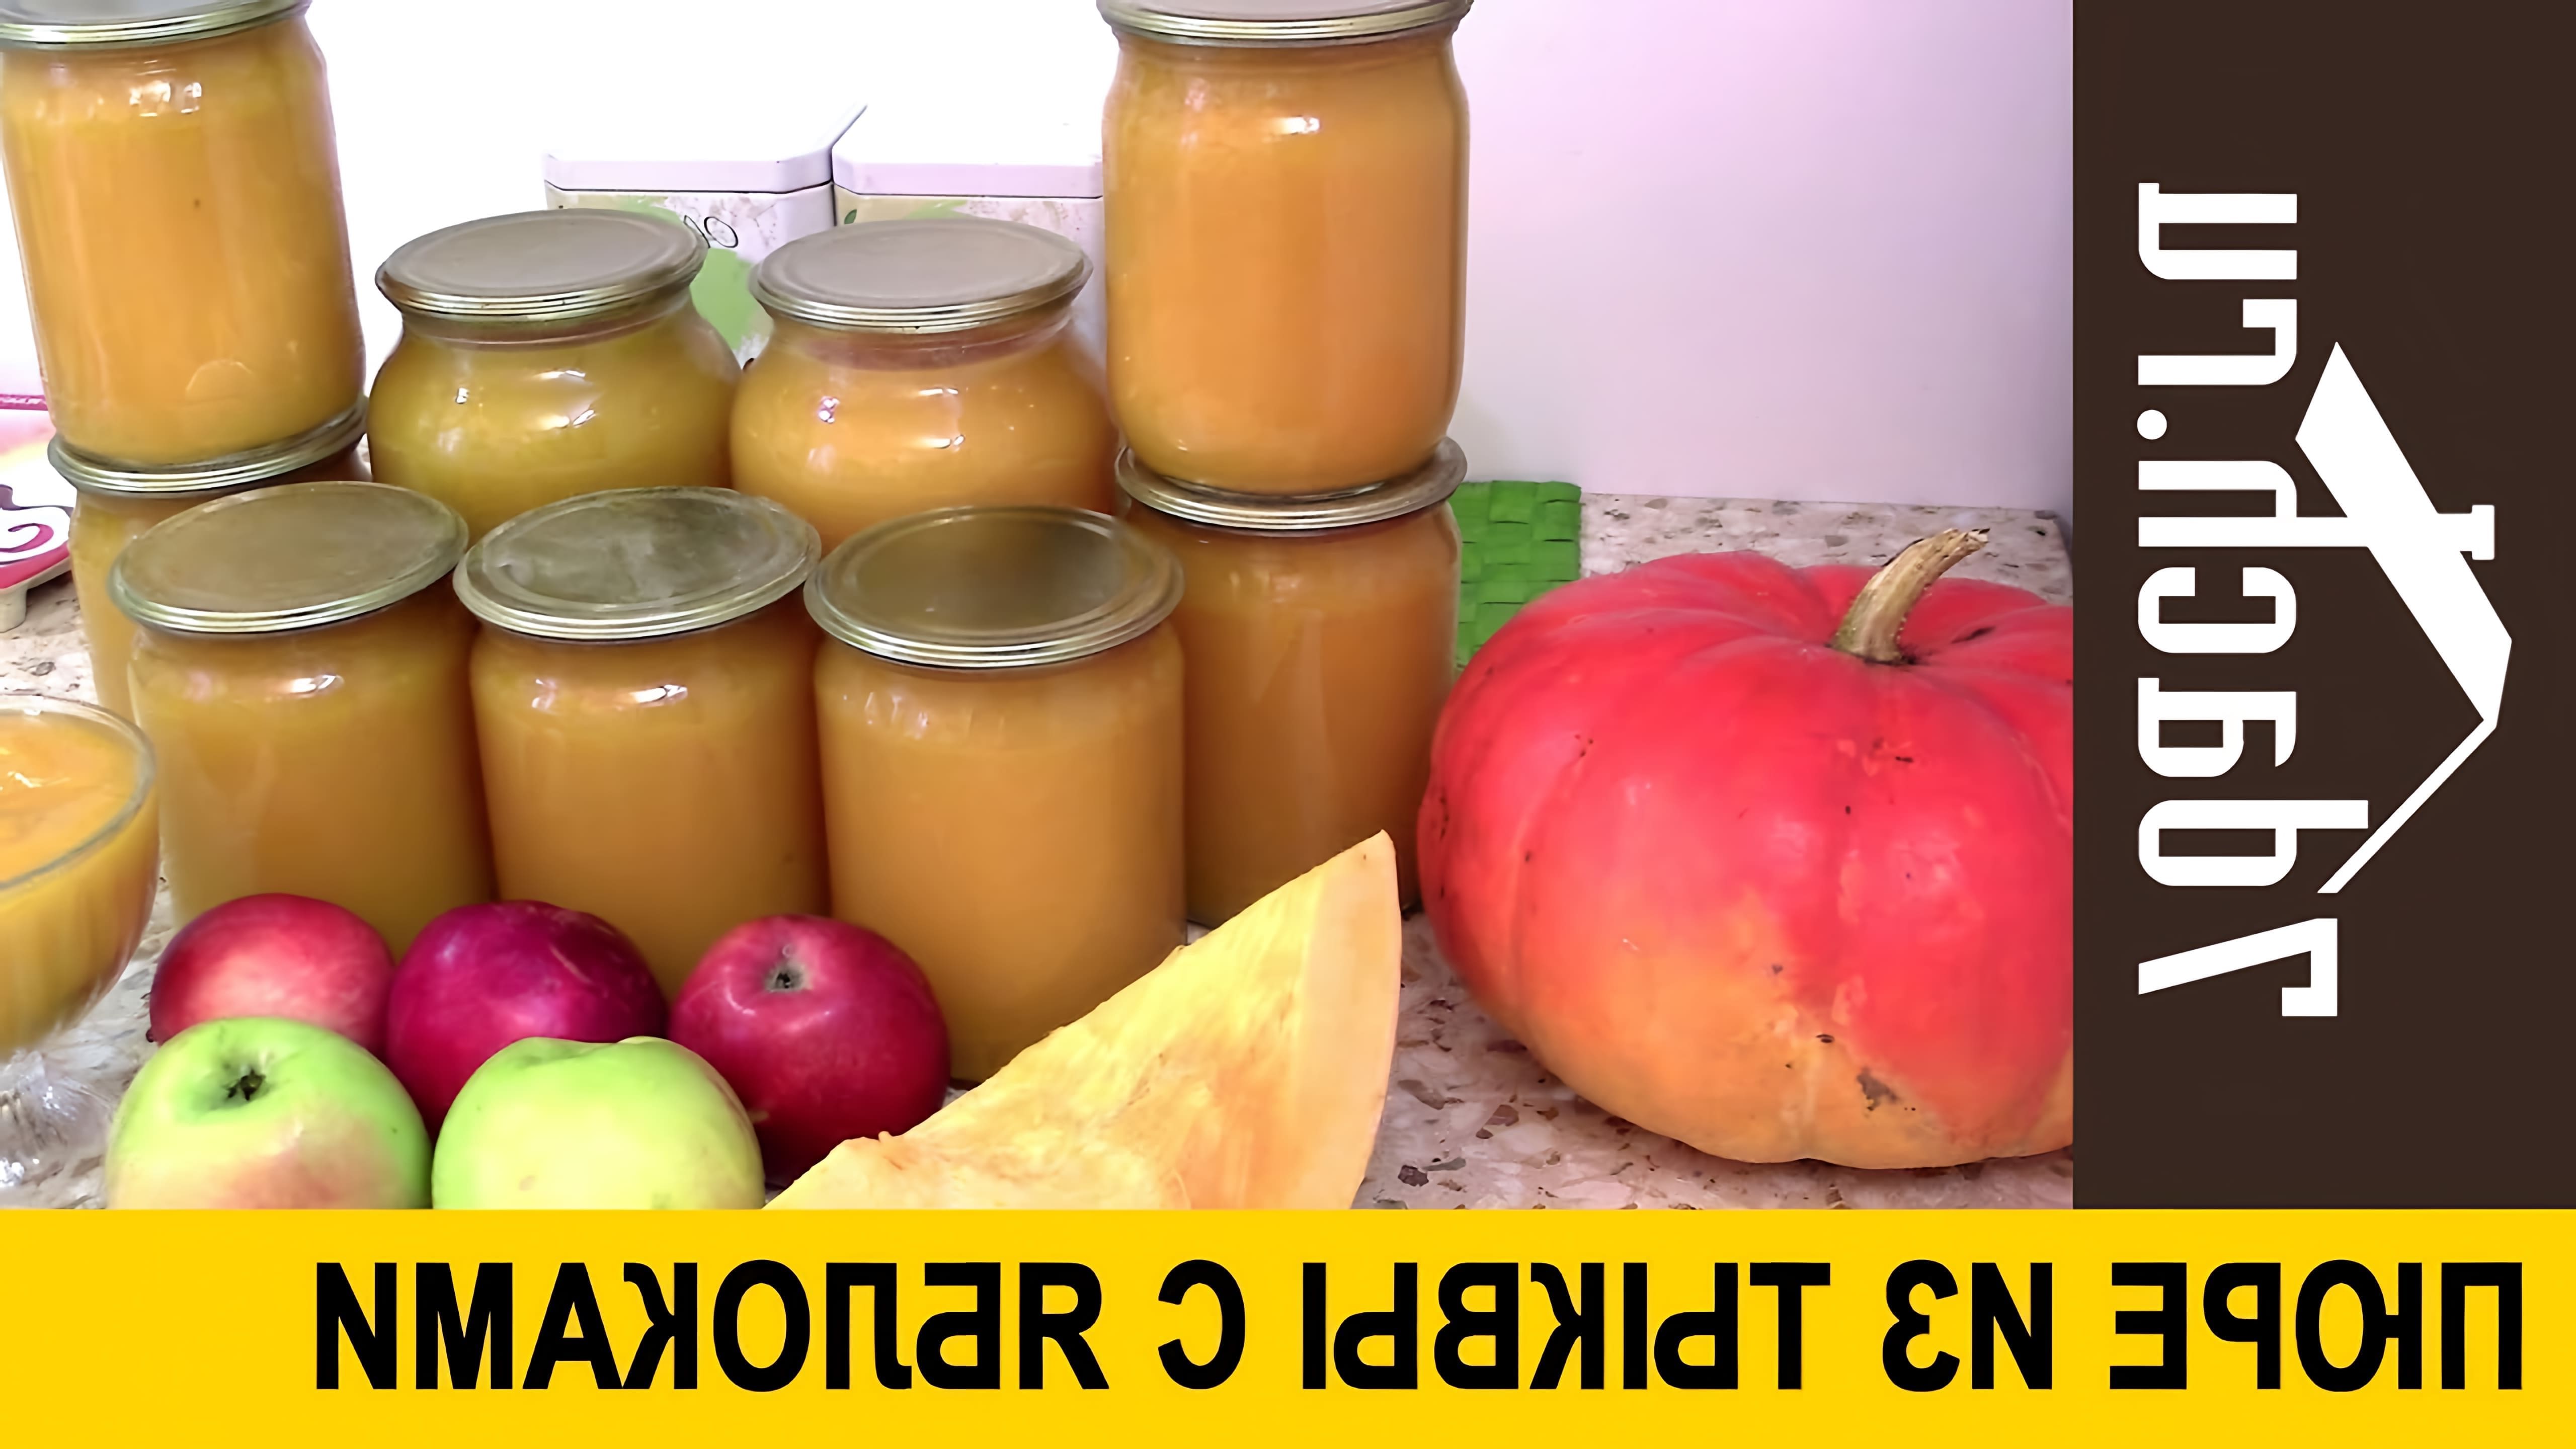 В данном видео демонстрируется рецепт приготовления пюре из тыквы и яблок на зиму